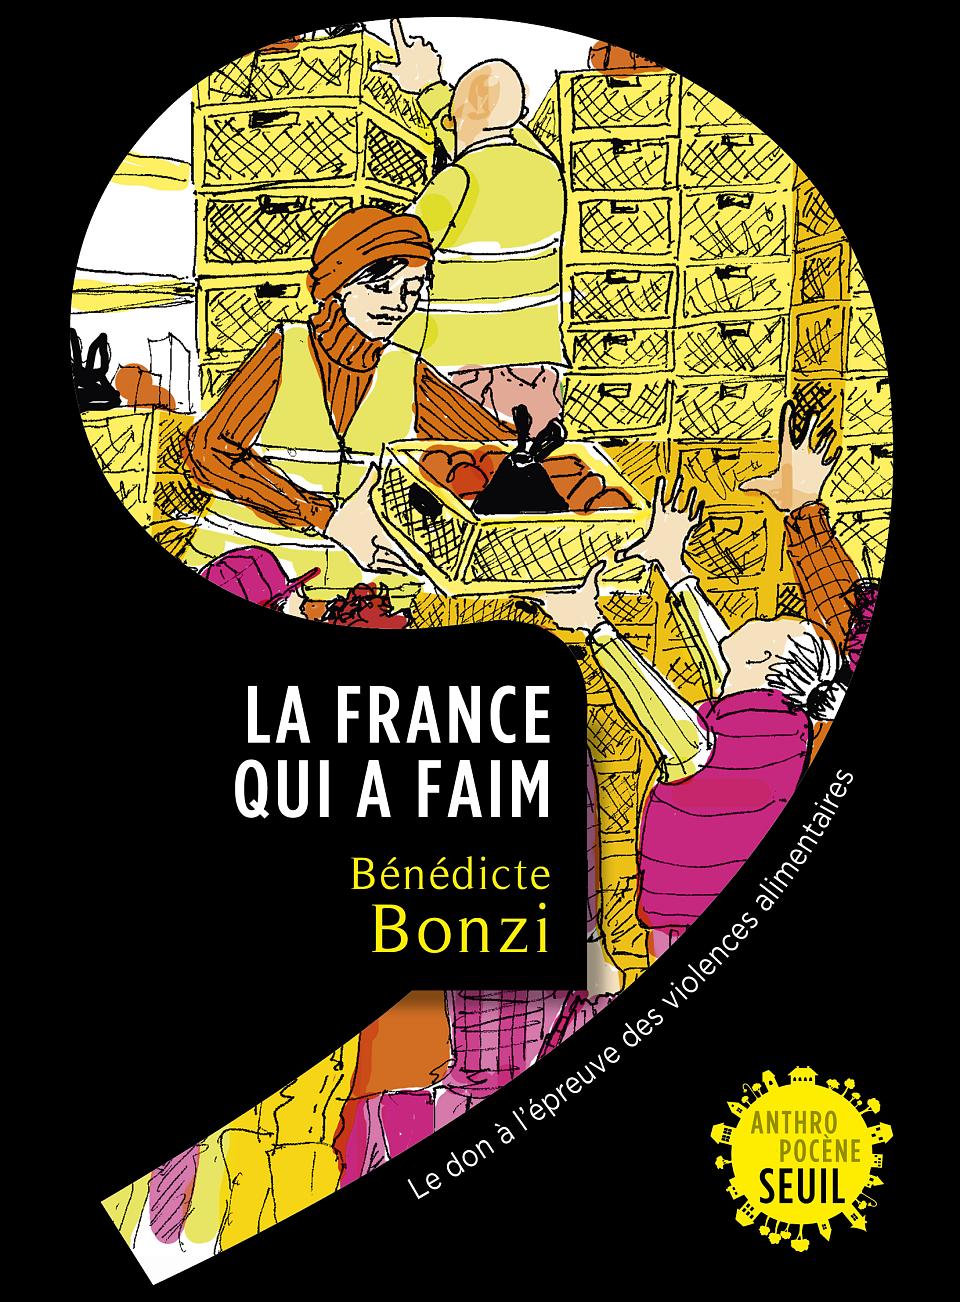 Bénédicte Bonzi, La France qui a faim, collection Anthropocène, éditions du Seuil, mars 2023.